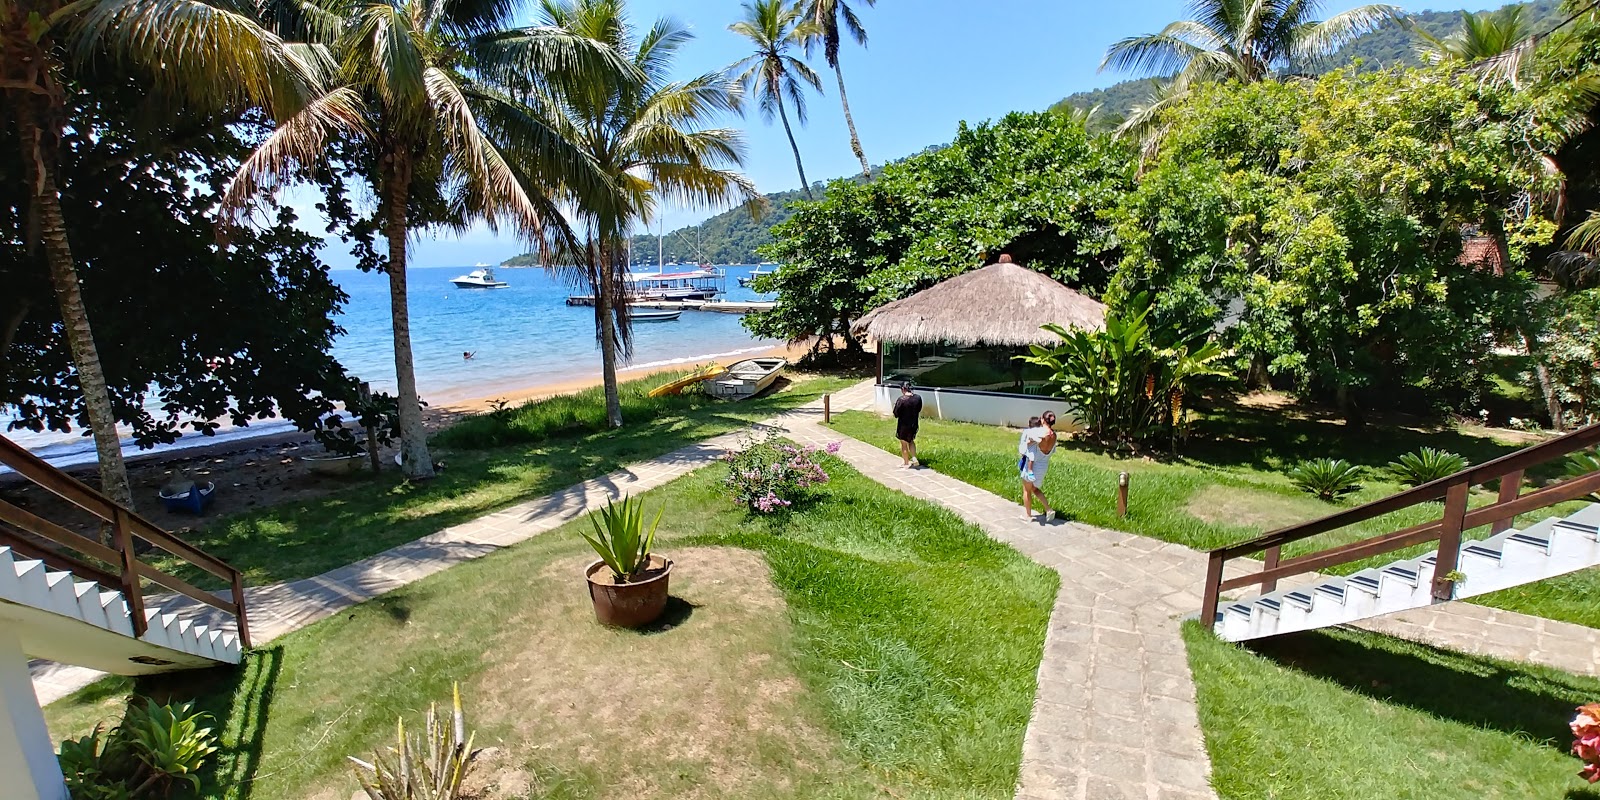 Photo of Camorim Pequeno with spacious shore